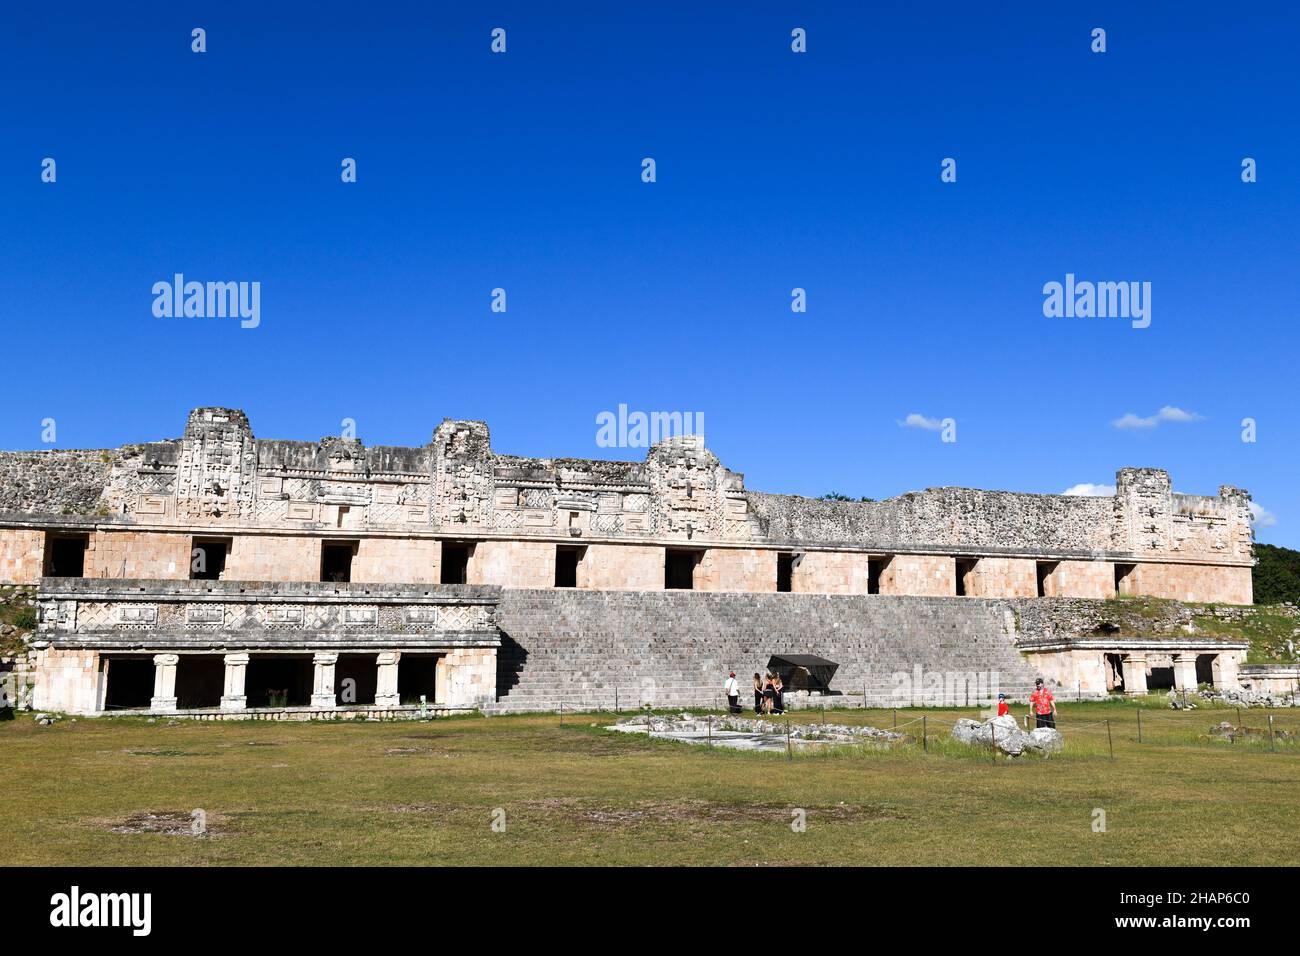 Uxmal es una antigua ciudad maya ubicada en el actual Yucatán, México. Es considerado uno de los sitios arqueológicos mayas más importantes Foto de stock